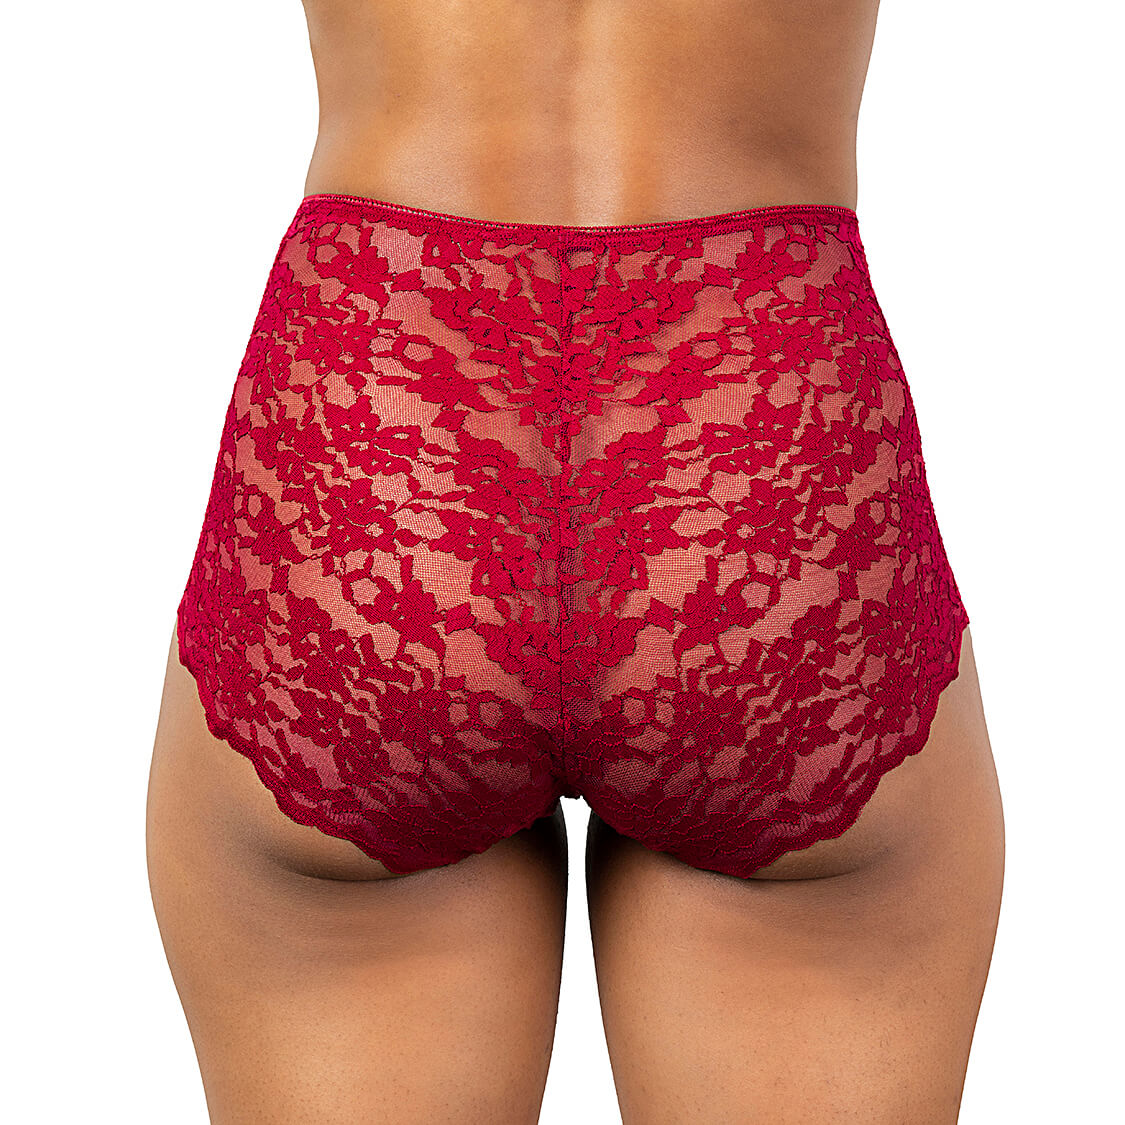 High Waist Lace Underwear in Red